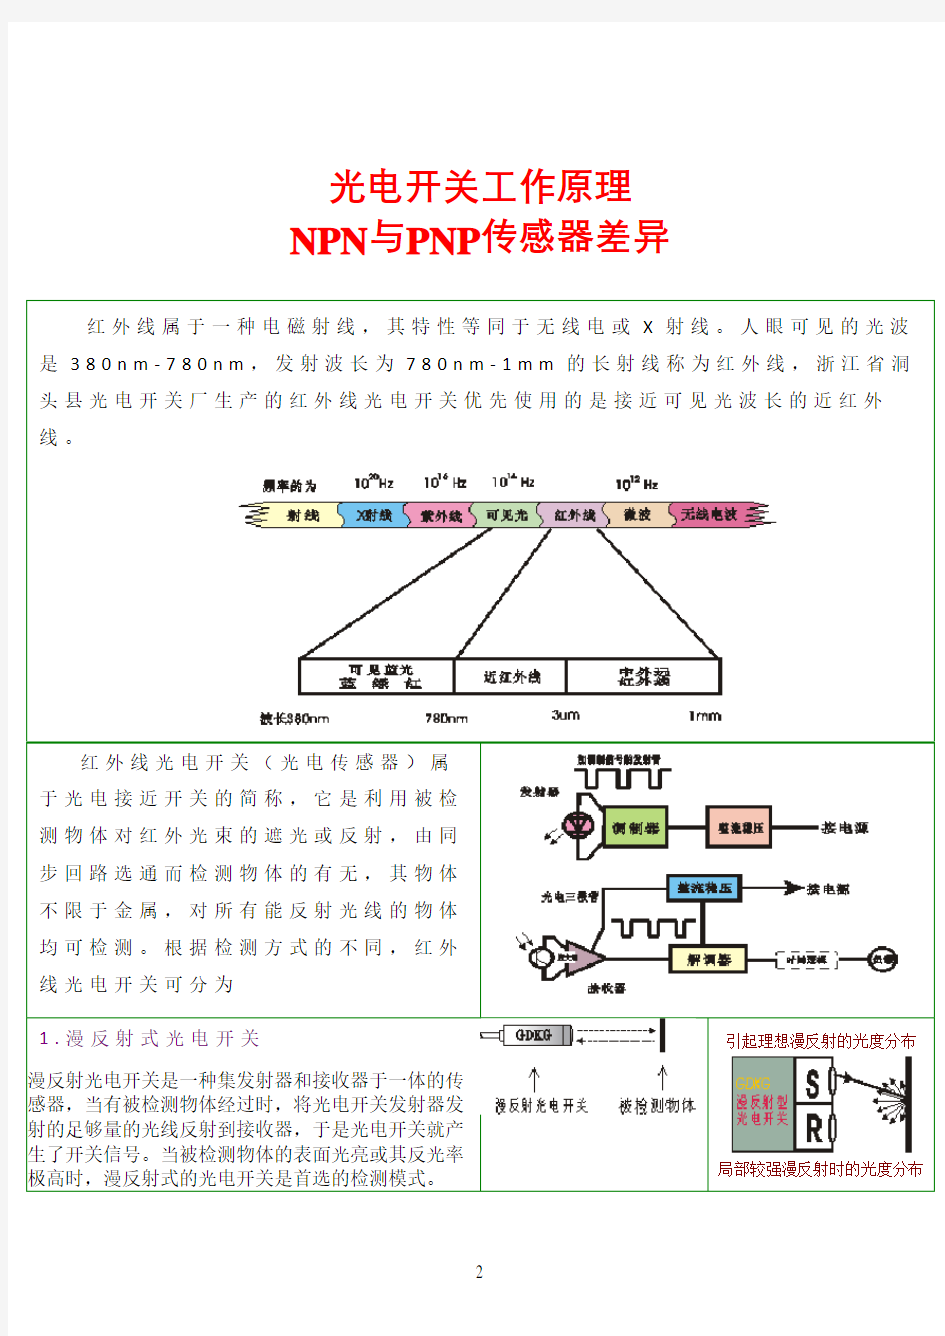 光电开关工作原理NPN与PNP传感器差异